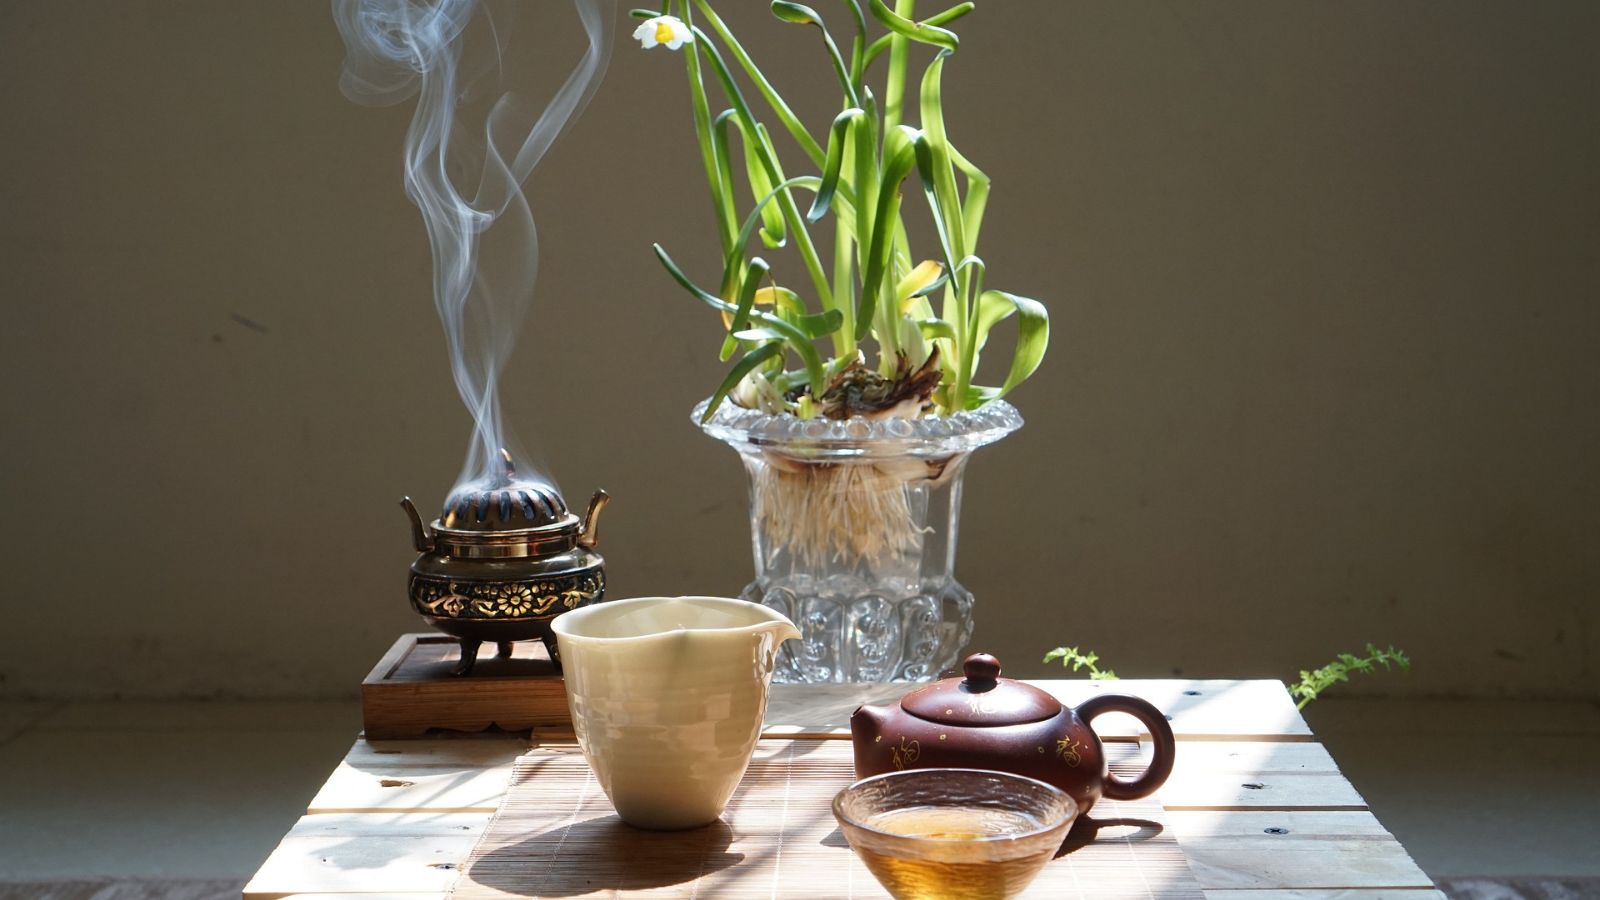 văn hoá cafe và trà việt nam, hình ảnh bộ ấm trà, hoa lan và trầm hương, sự kết hợp giữa truyền thống và hiện đại